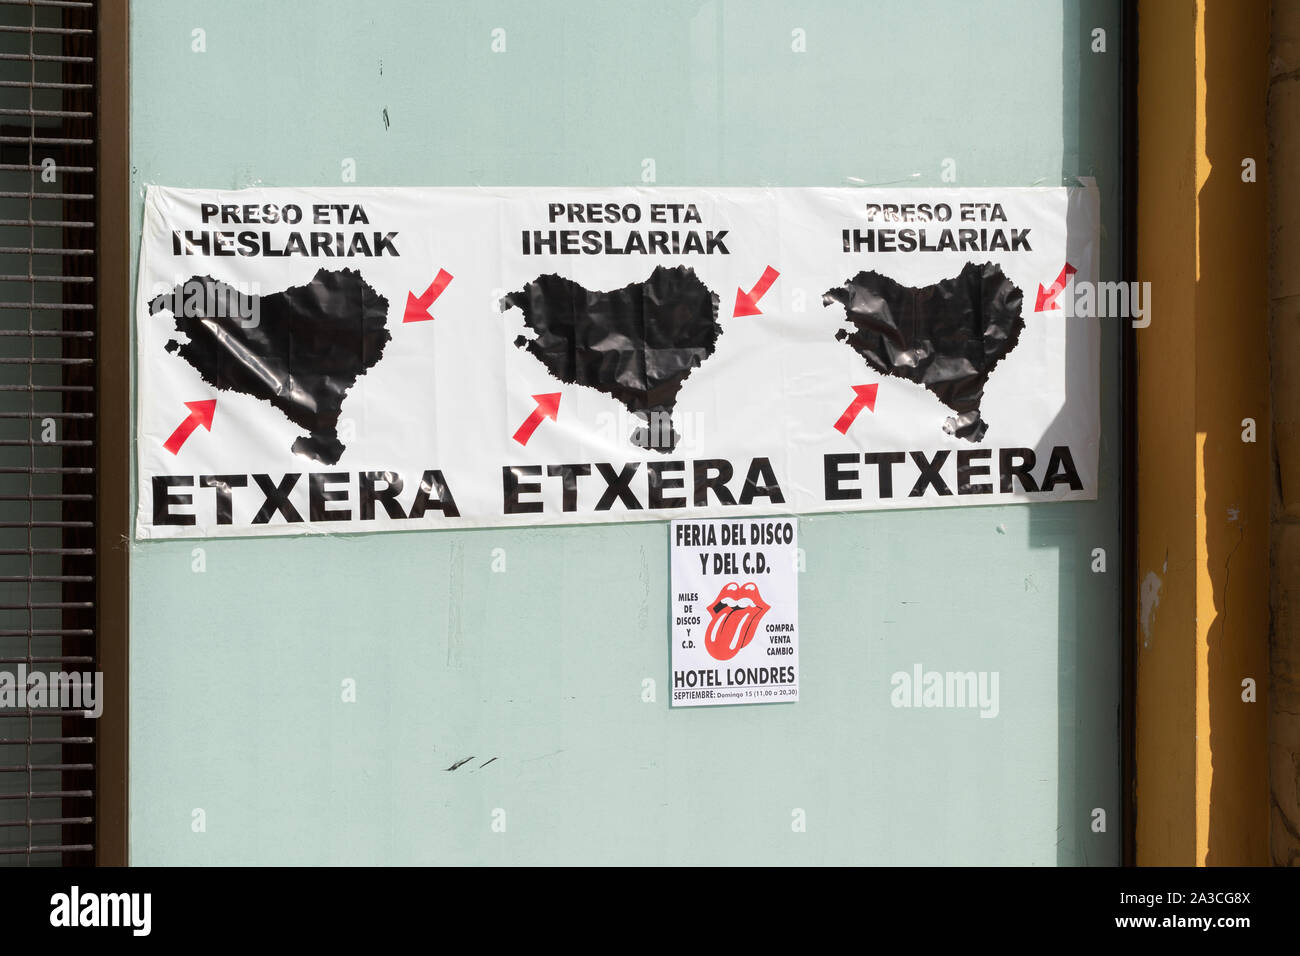 Mouvement pour l'indépendance Basque affiches campagne pour le retour des prisonniers et des exilés - San Sebastian, Espagne, Europe Banque D'Images